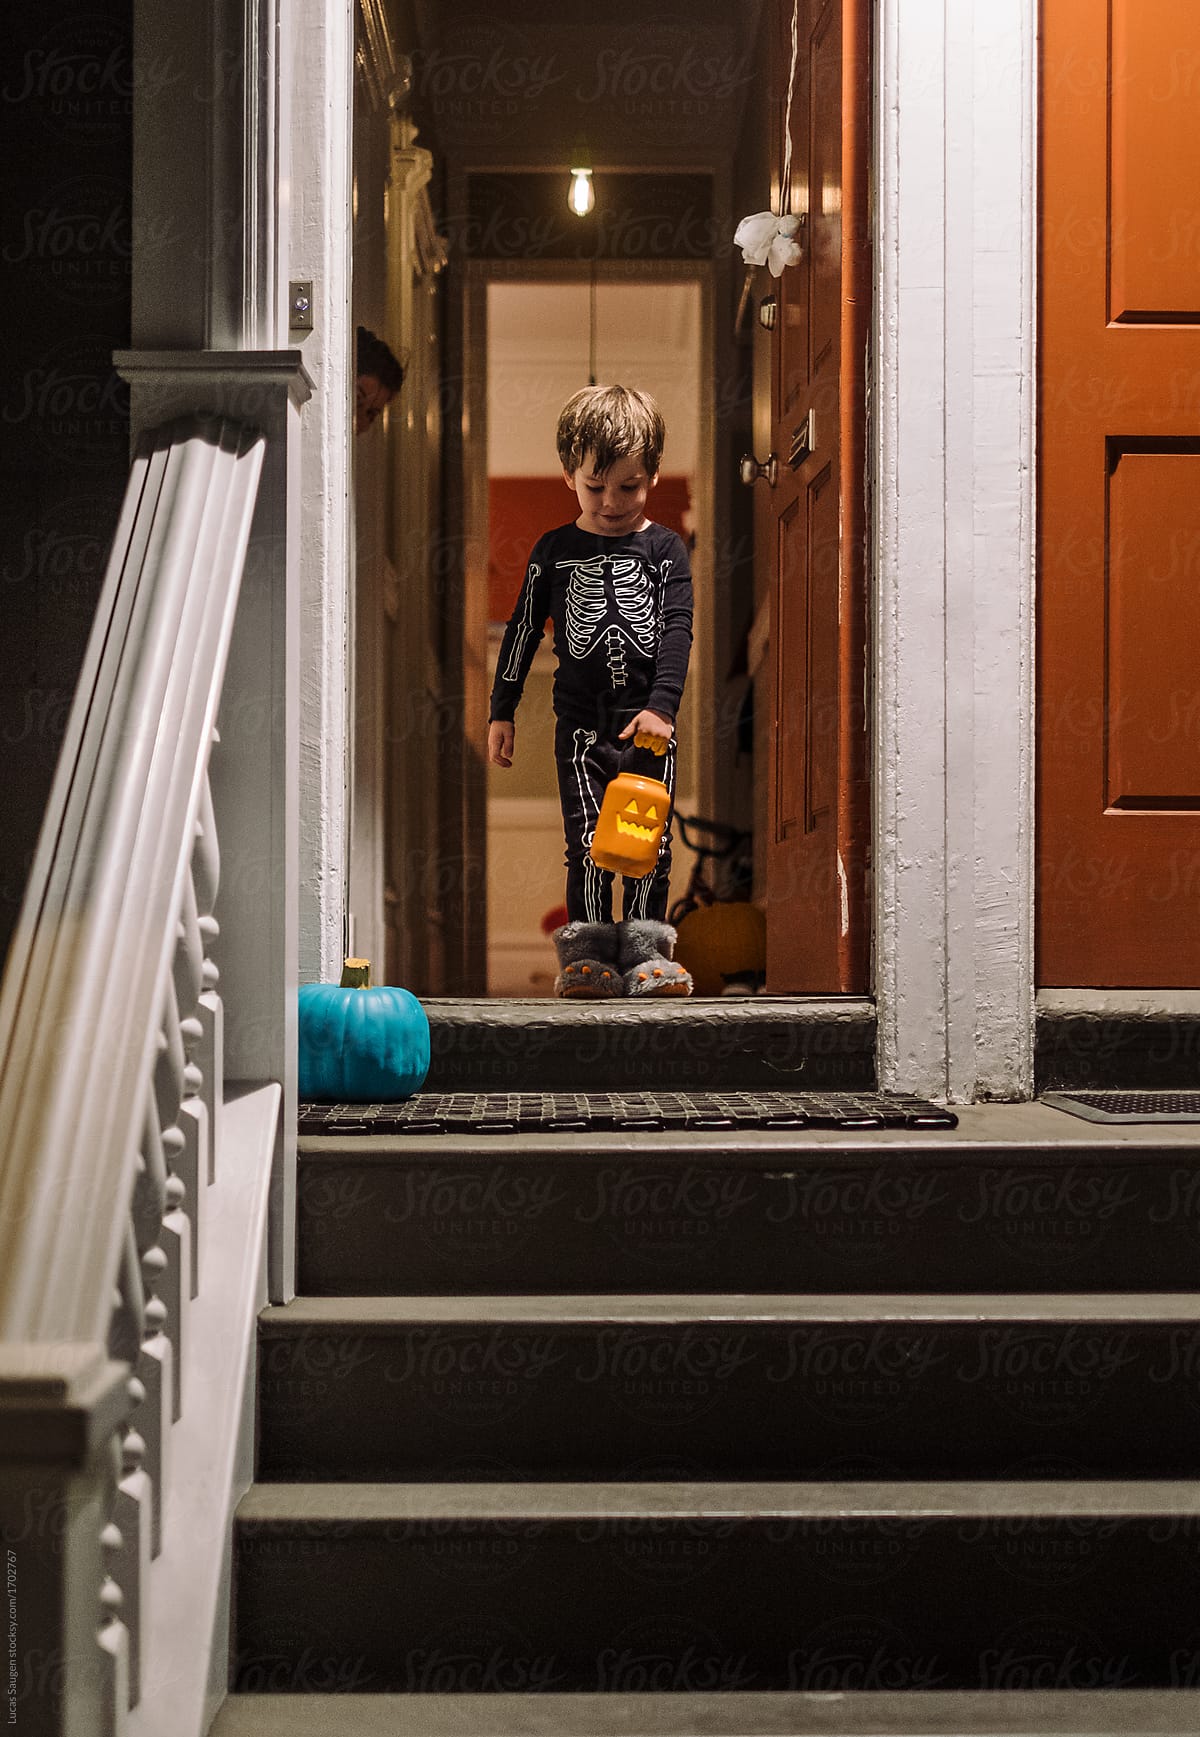 Boy with jack-o-lantern basket on doorstep